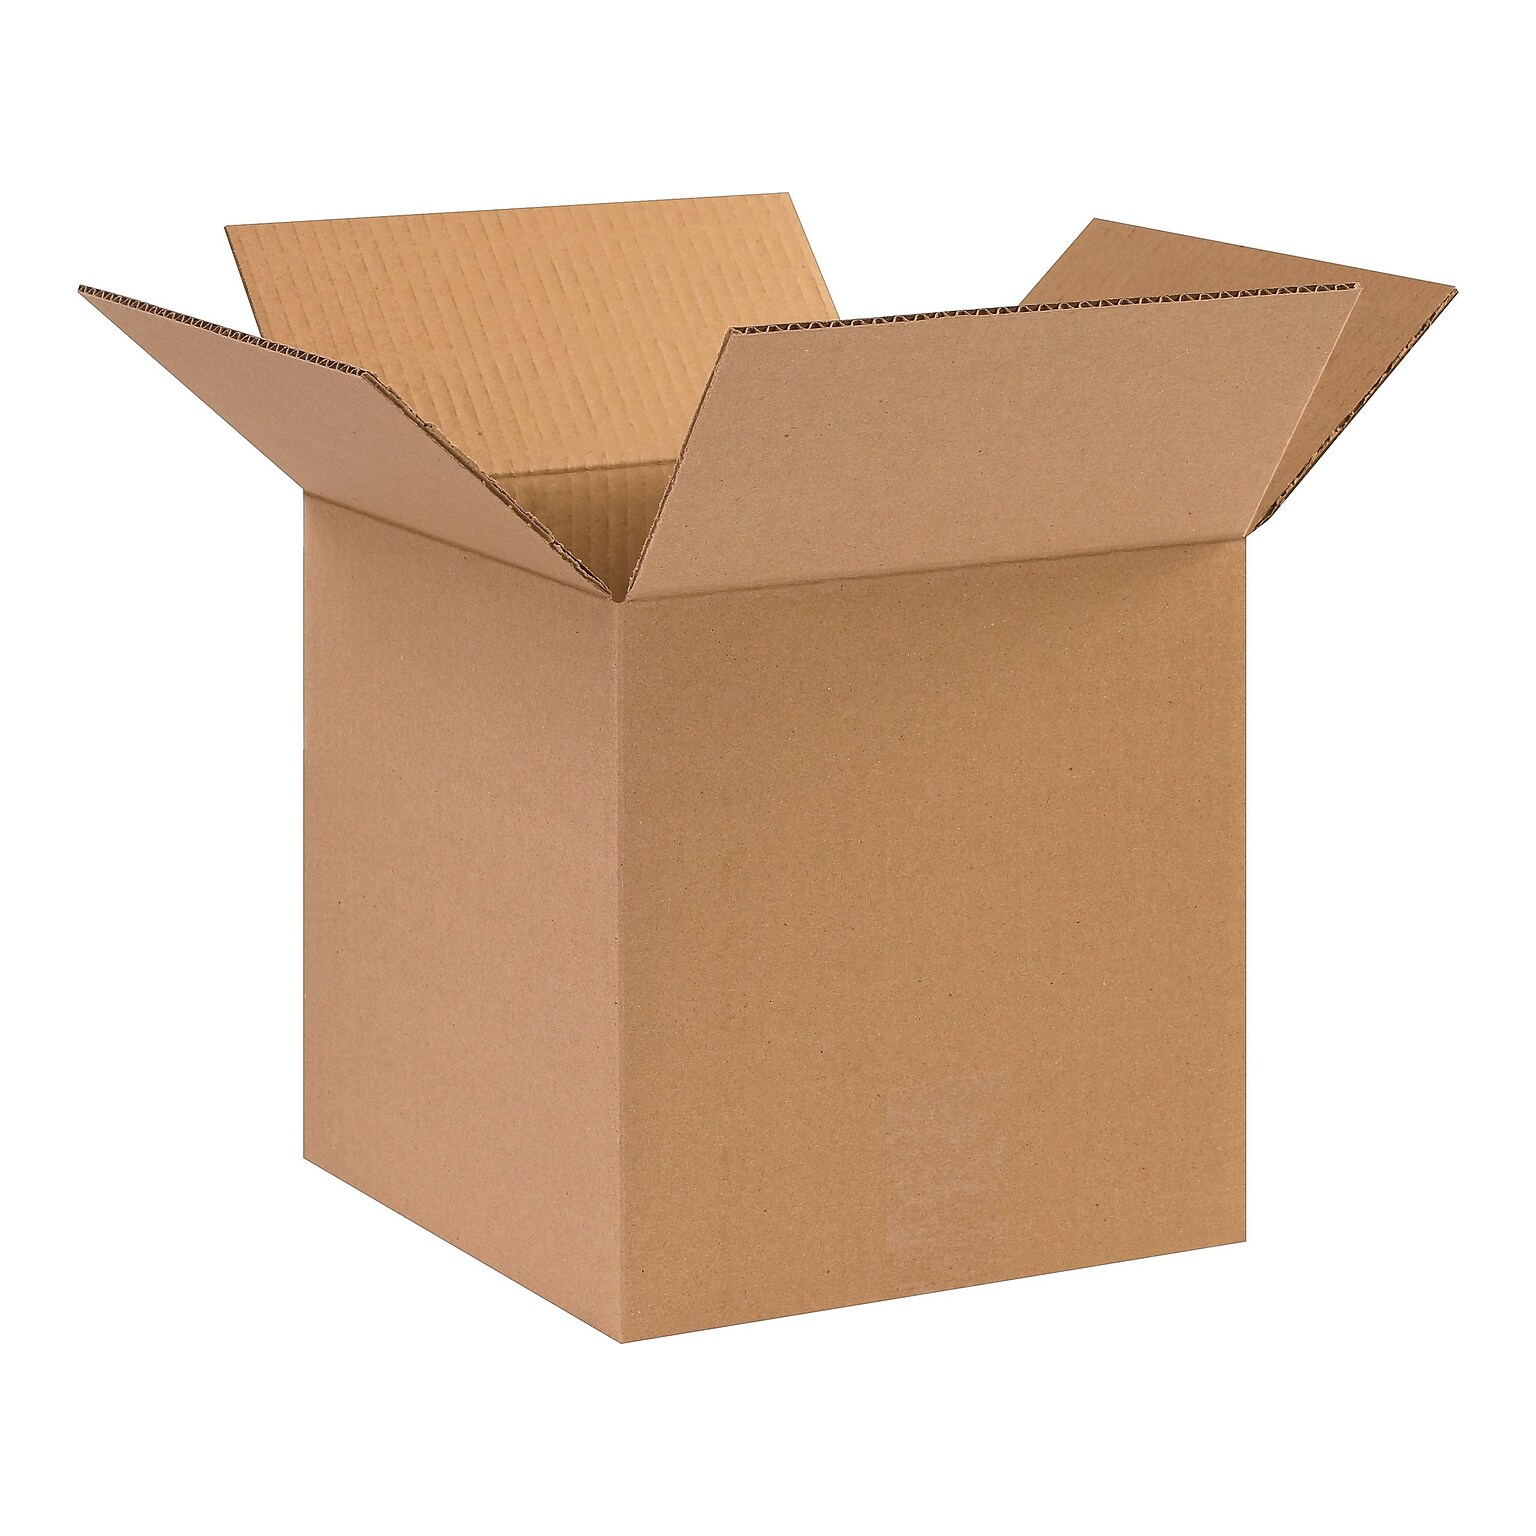 10 x 10 x 10 Standard Shipping Boxes, 32 ECT, Kraft, 25/Bundle (101010)